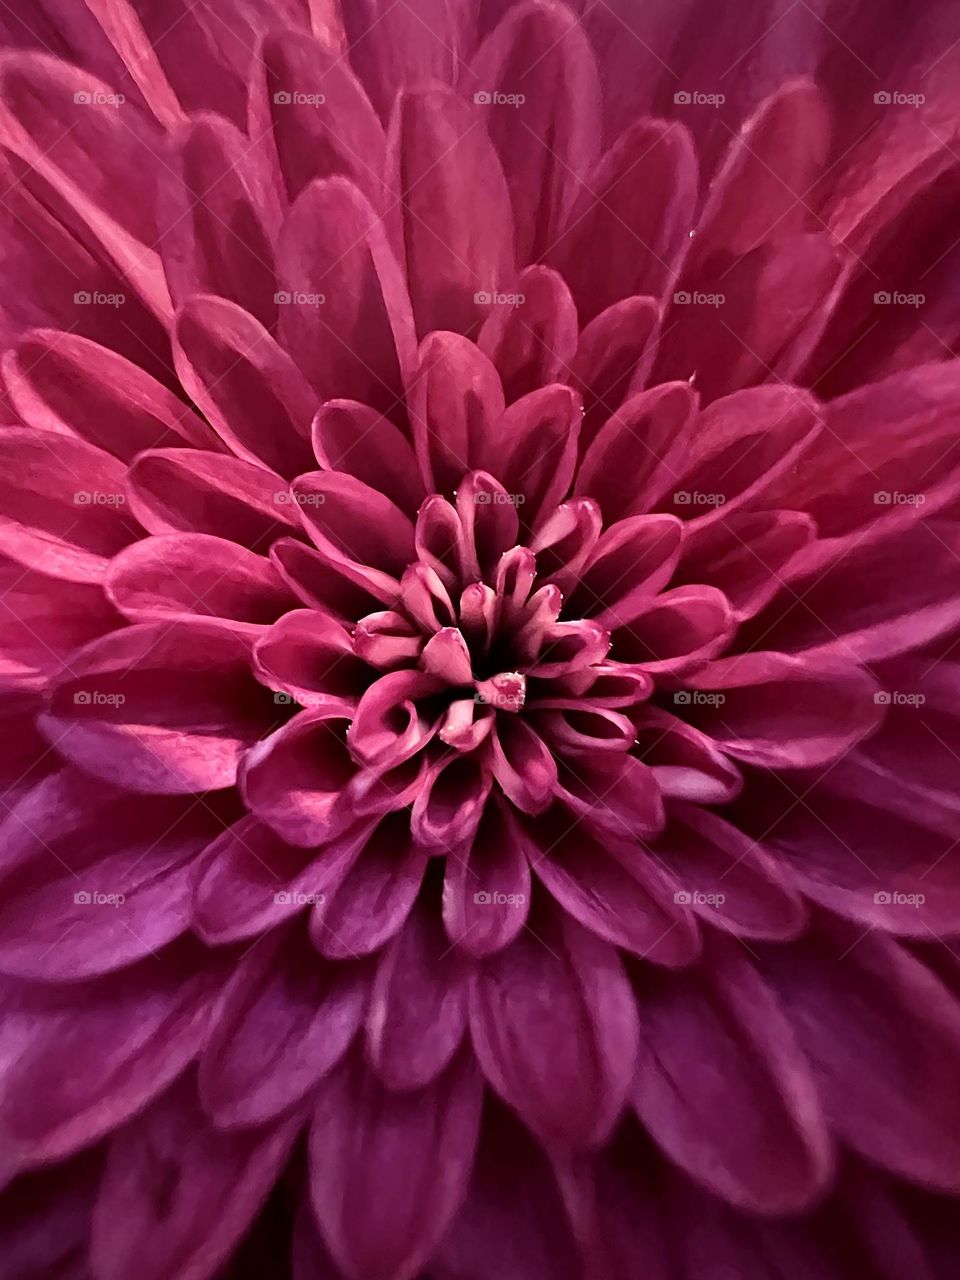 Heart of a flower